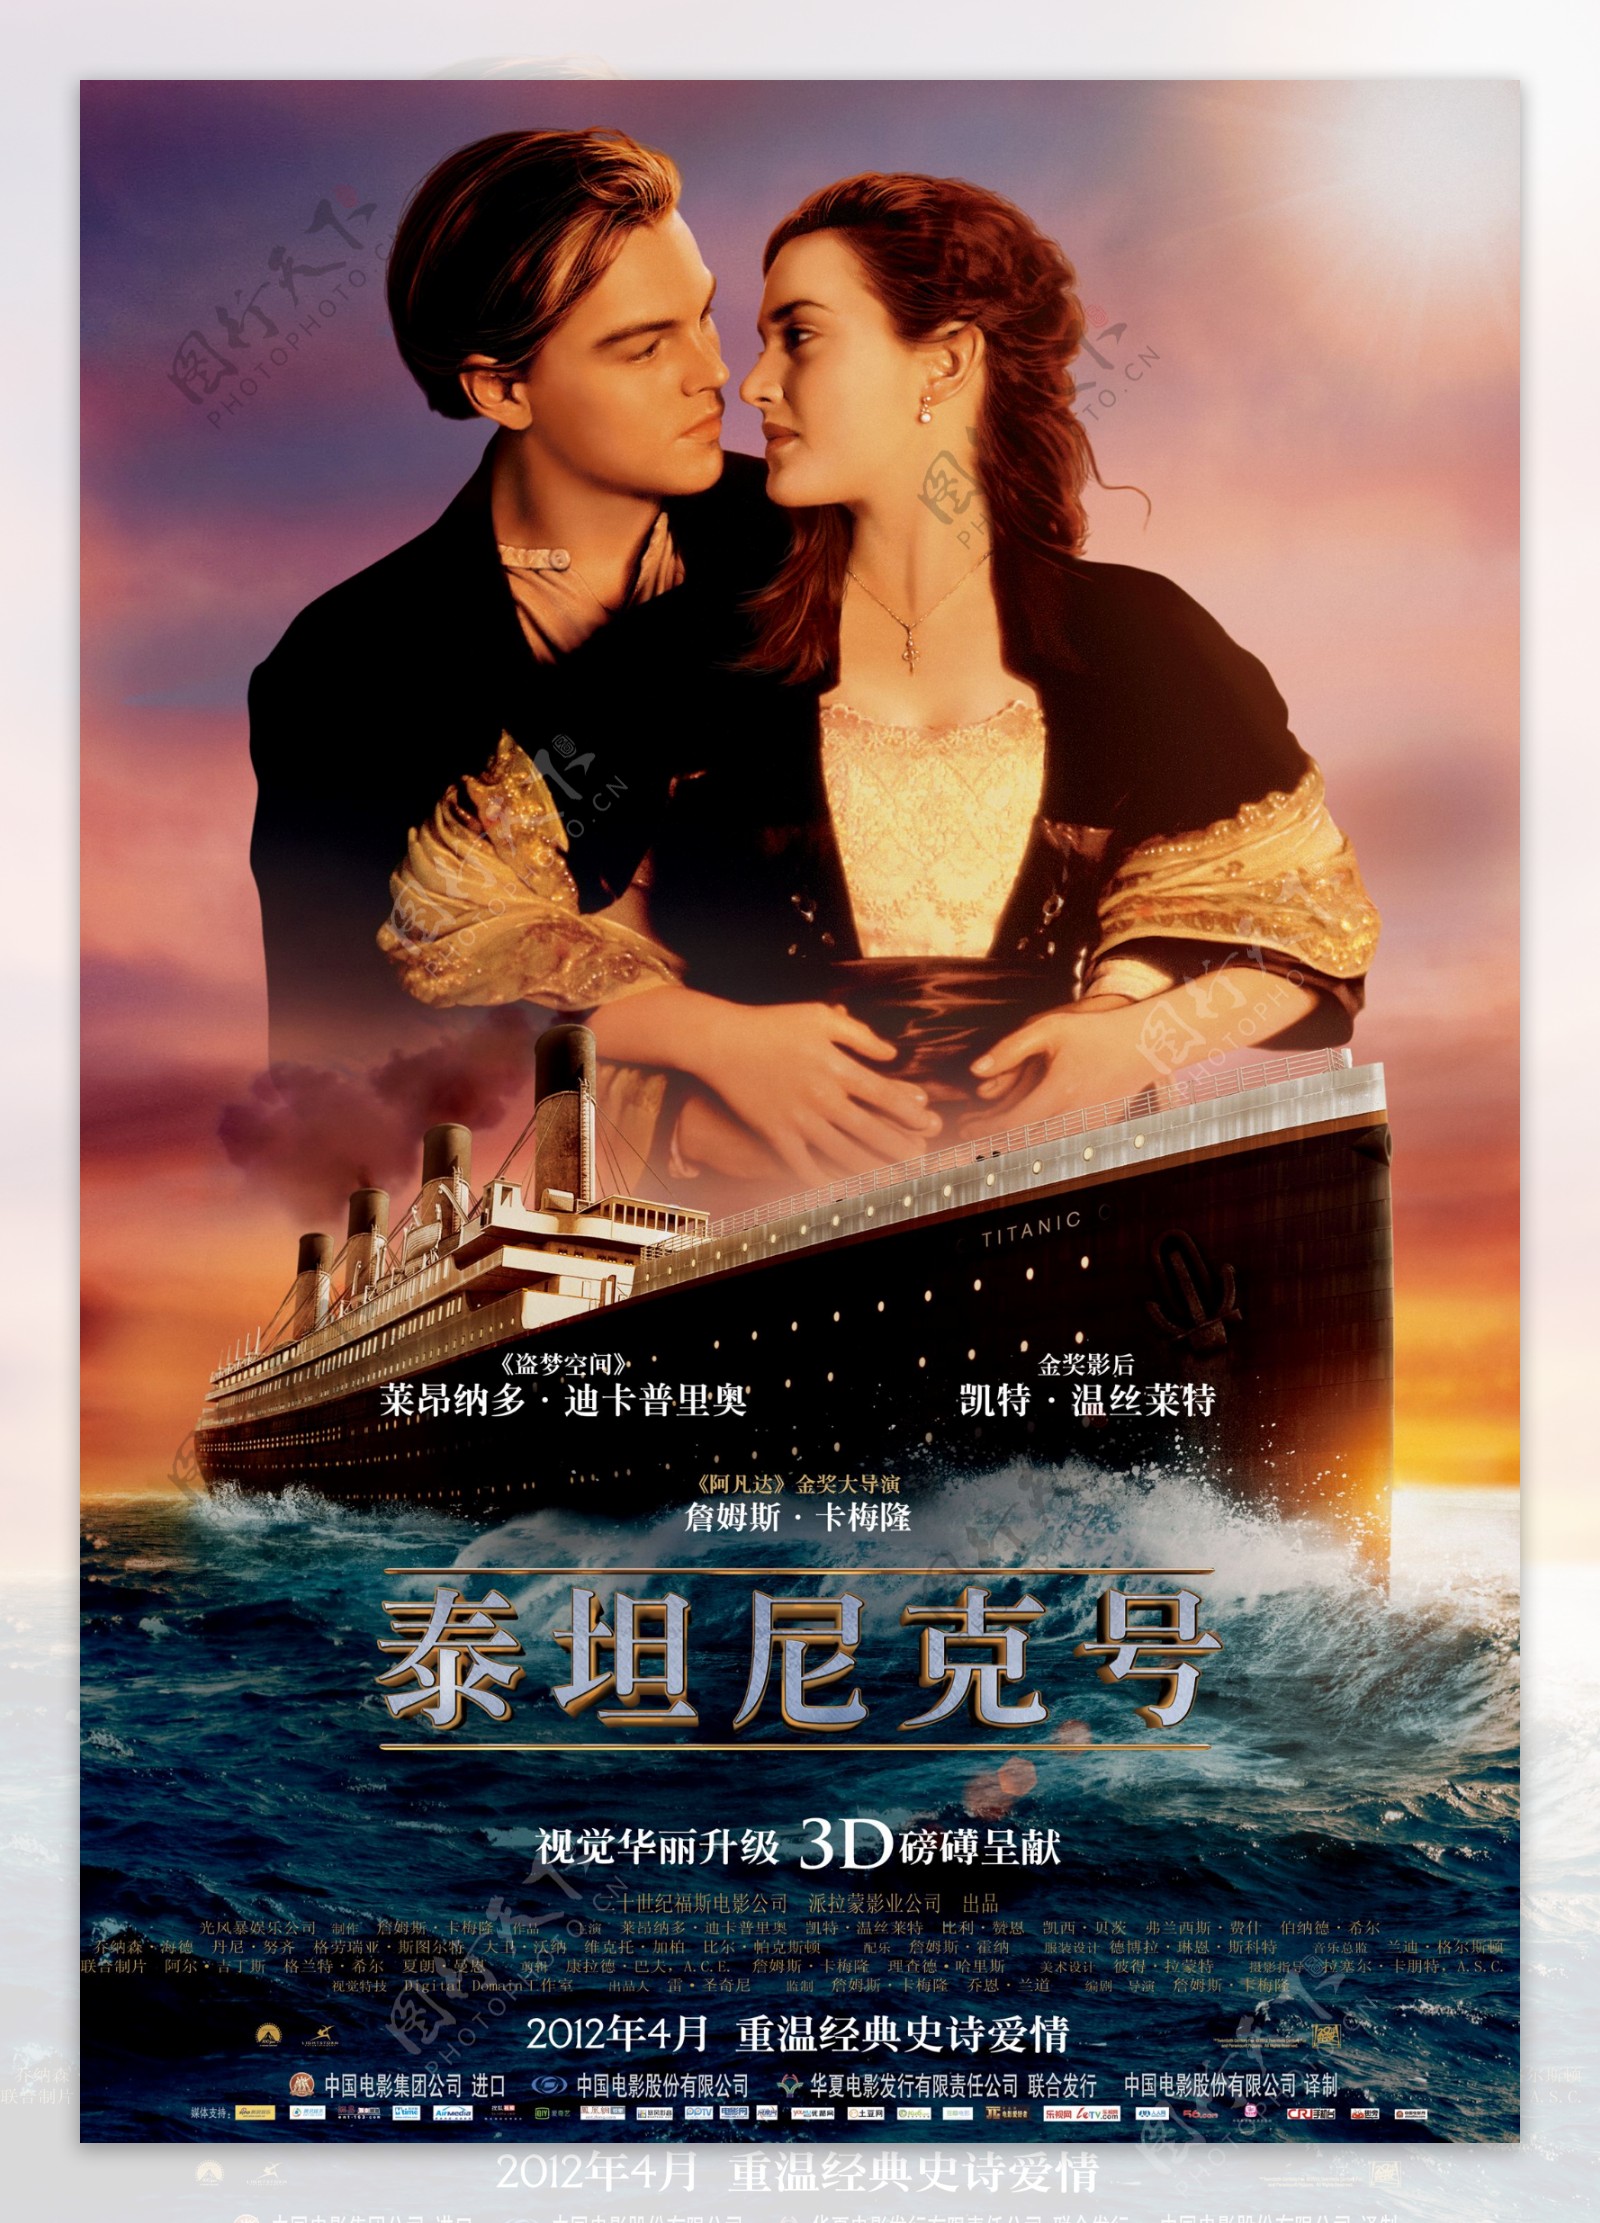 泰坦尼克3d版正式中文海报图片